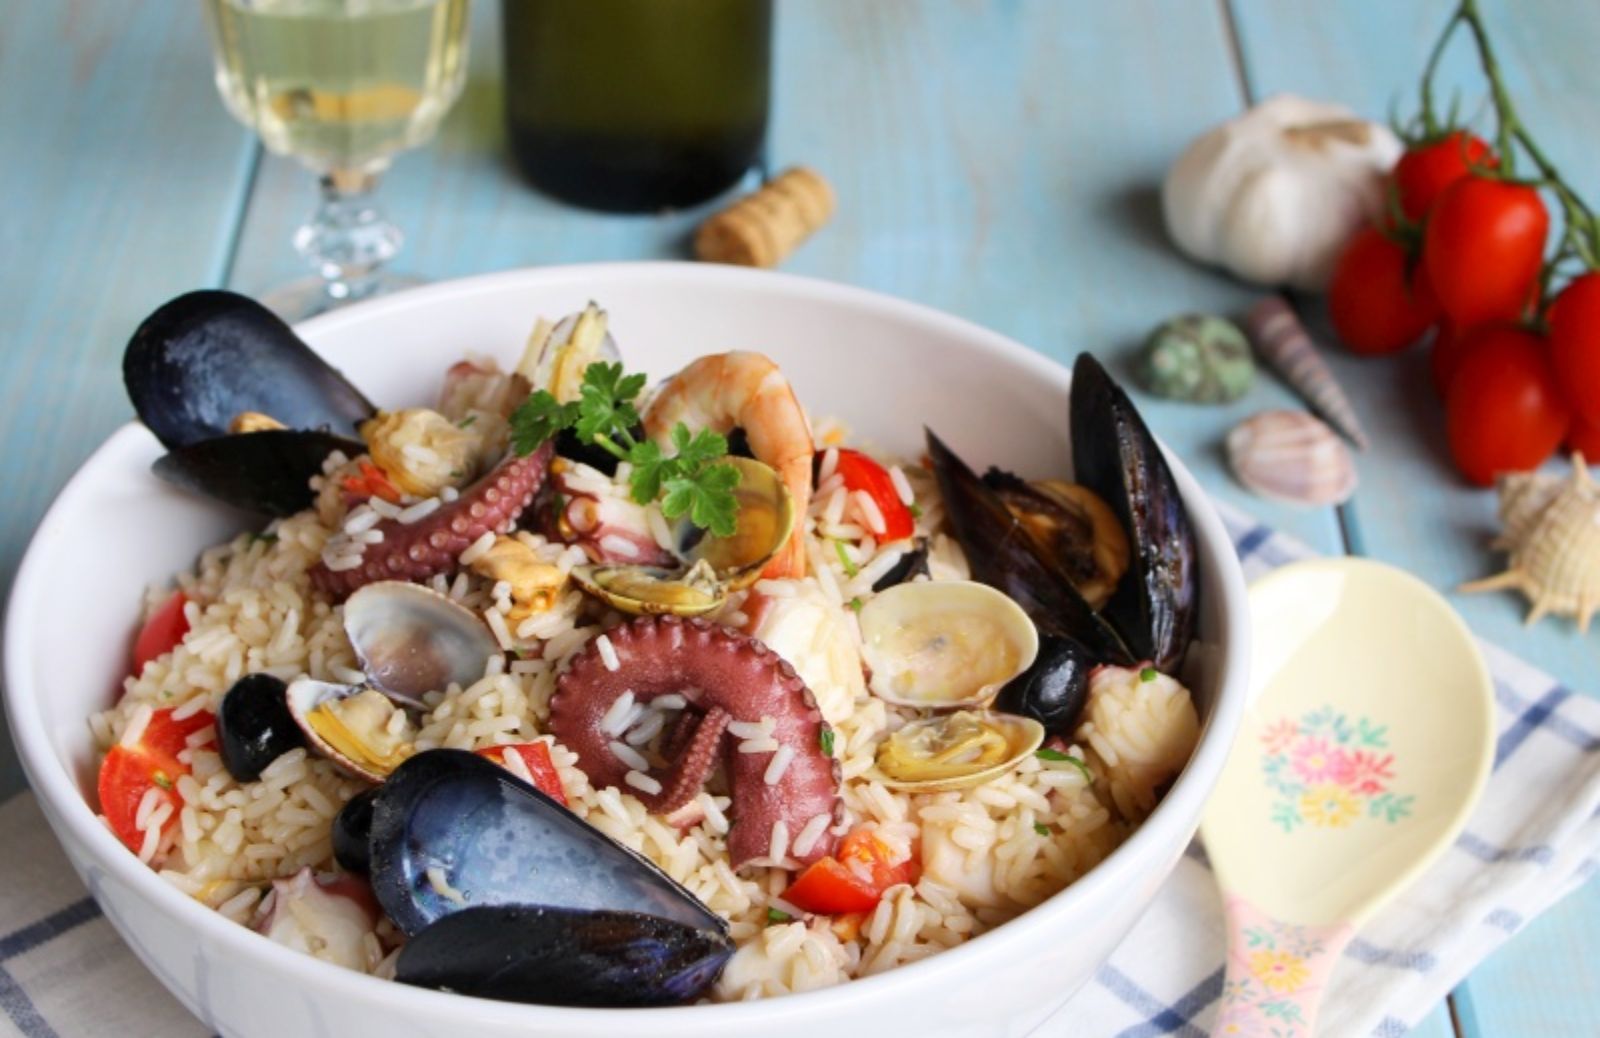 Insalata di riso marinara: una ricetta al sapore di mare